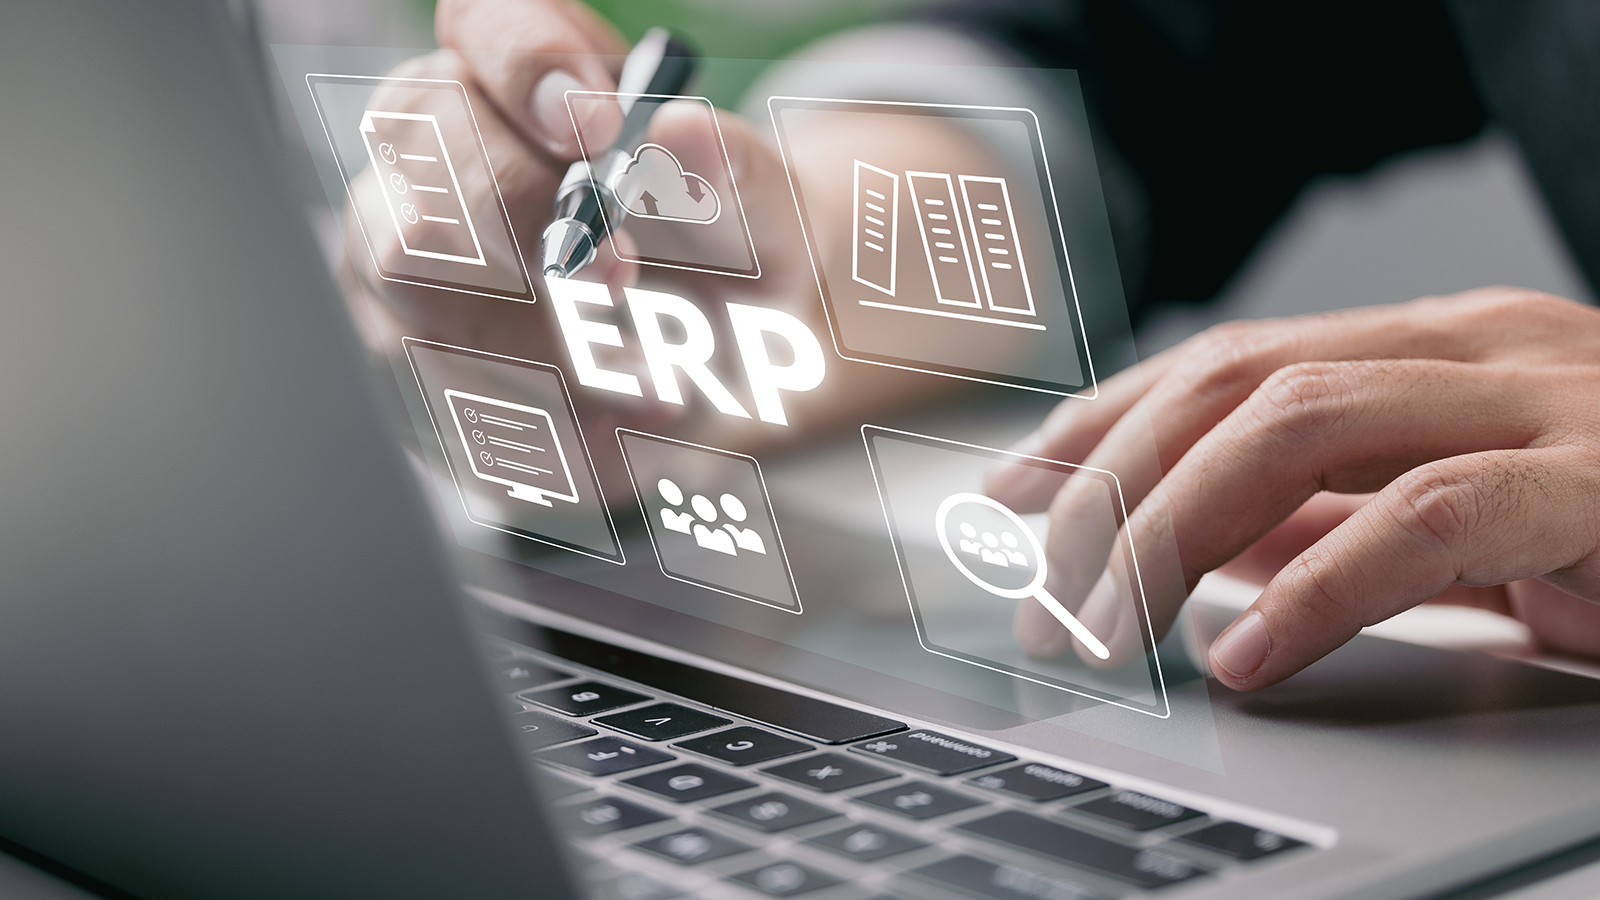 7 preguntas y respuestas sobre un software de gestión ERP